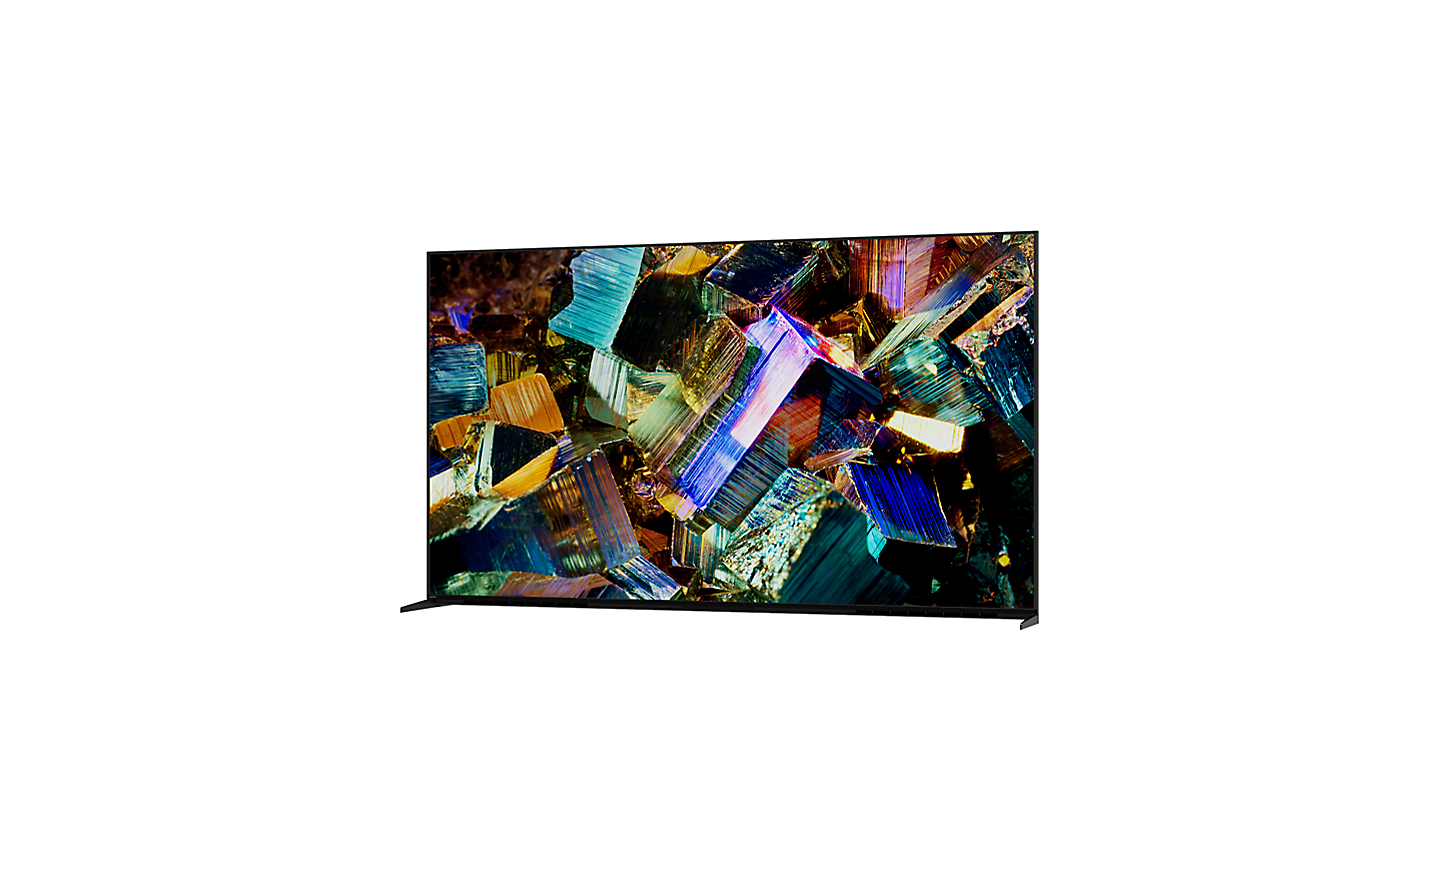 Klizni prikazivač od 360 stepeni za Z9K Series na kom se vidi TV u prikazu od 360° i snimak ekrana sa raznobojnim kristalima